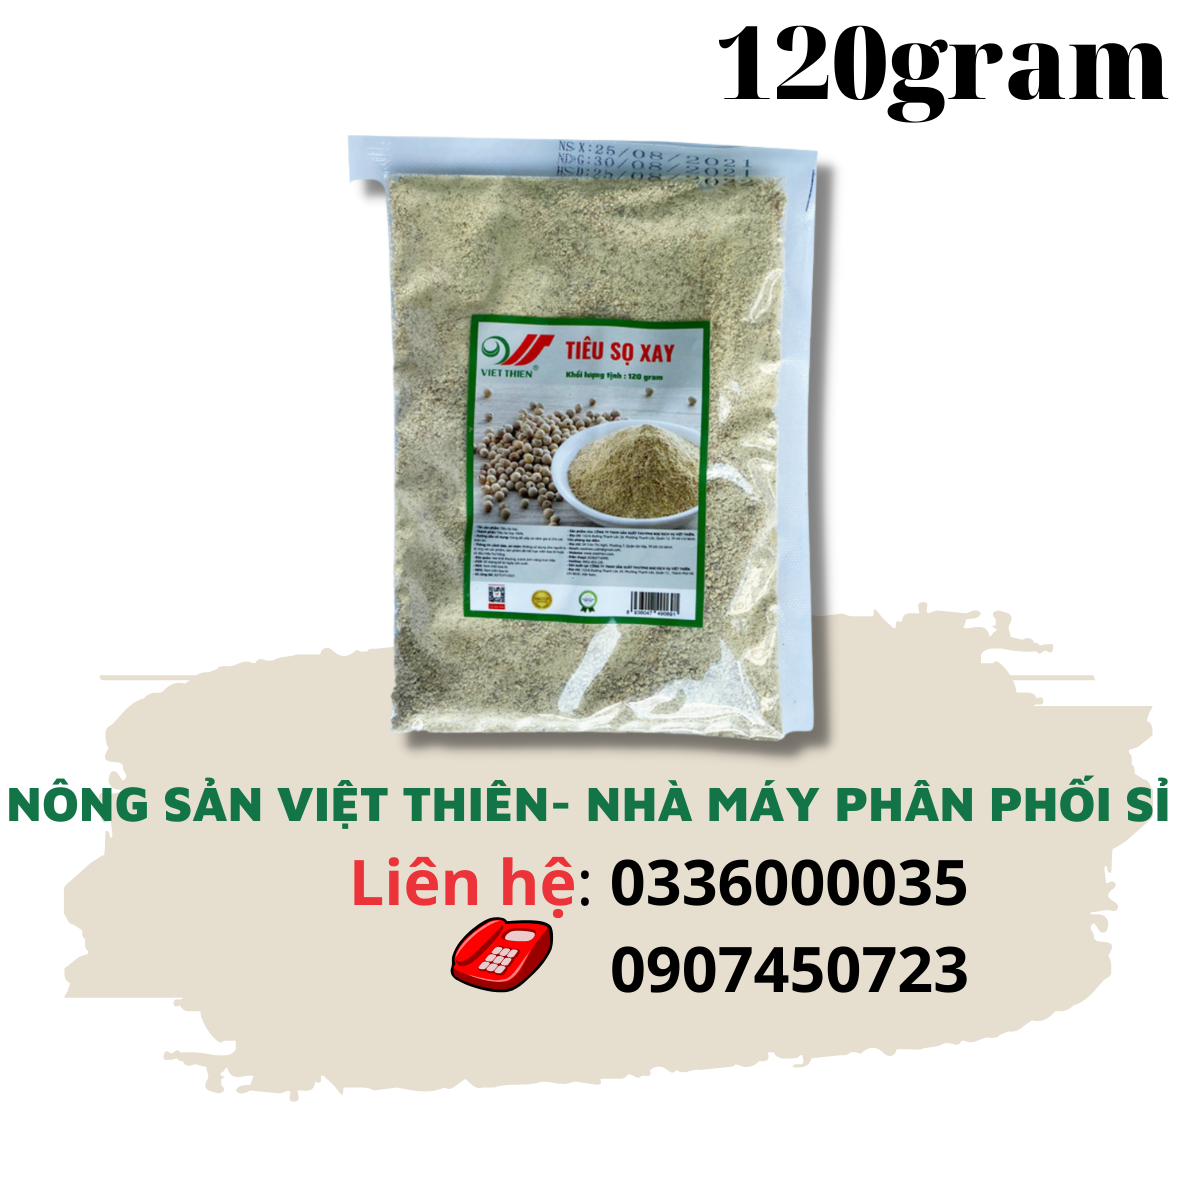 Tiêu sọ xay Việt Thiên 120g, nhà máy sản xuất và phân phối nông sản Việt Thiên, giá rẻ